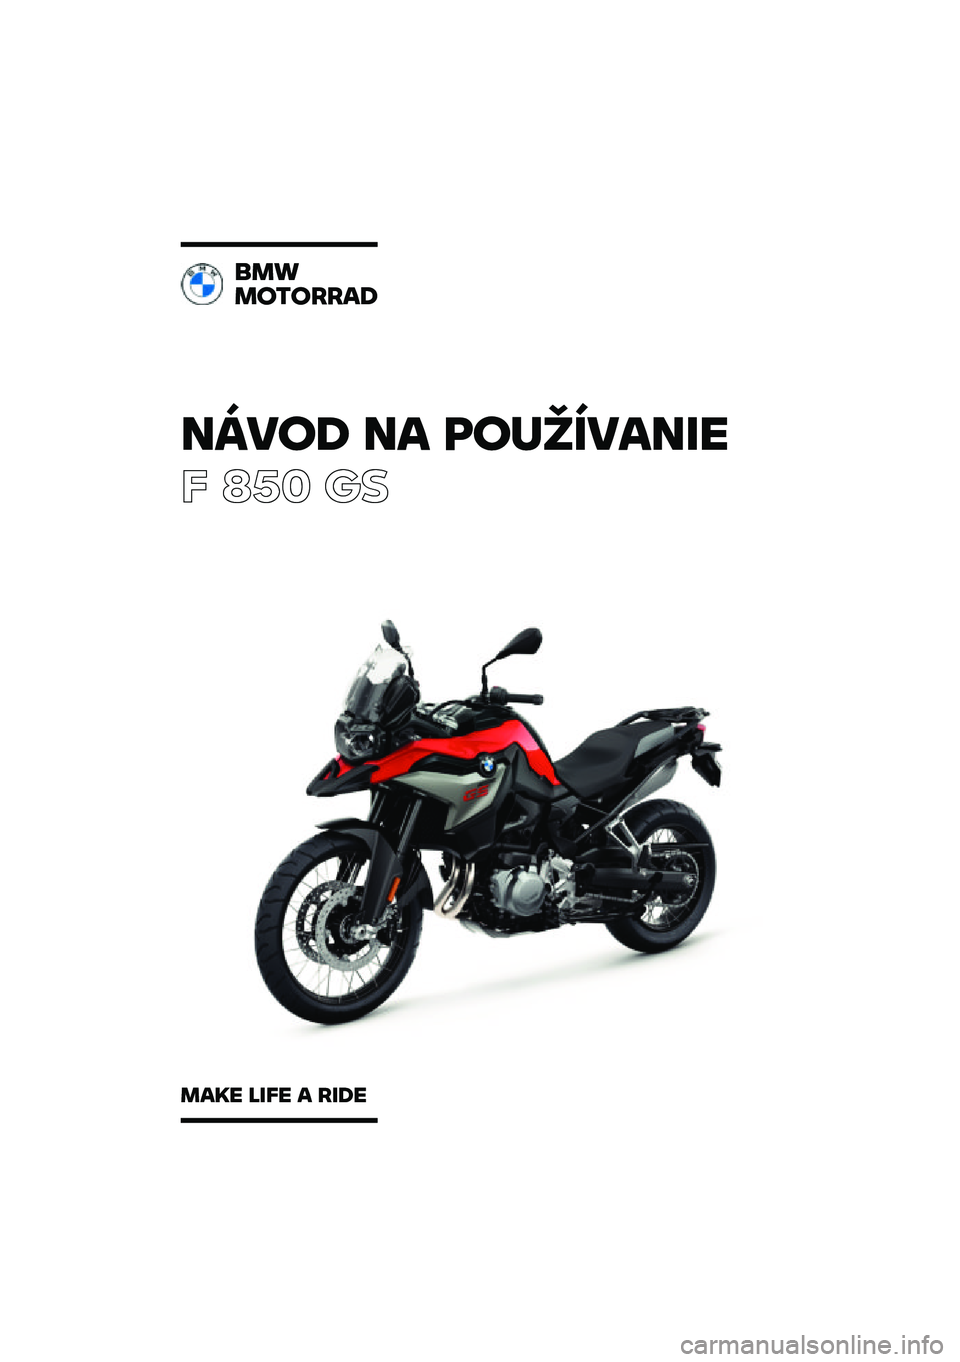 BMW MOTORRAD F 850 GS 2021  Návod na používanie (in Slovak) �����\b �� �	��
�������
� ��� �	�

���
��������\b
���� ���� � ���\b� 